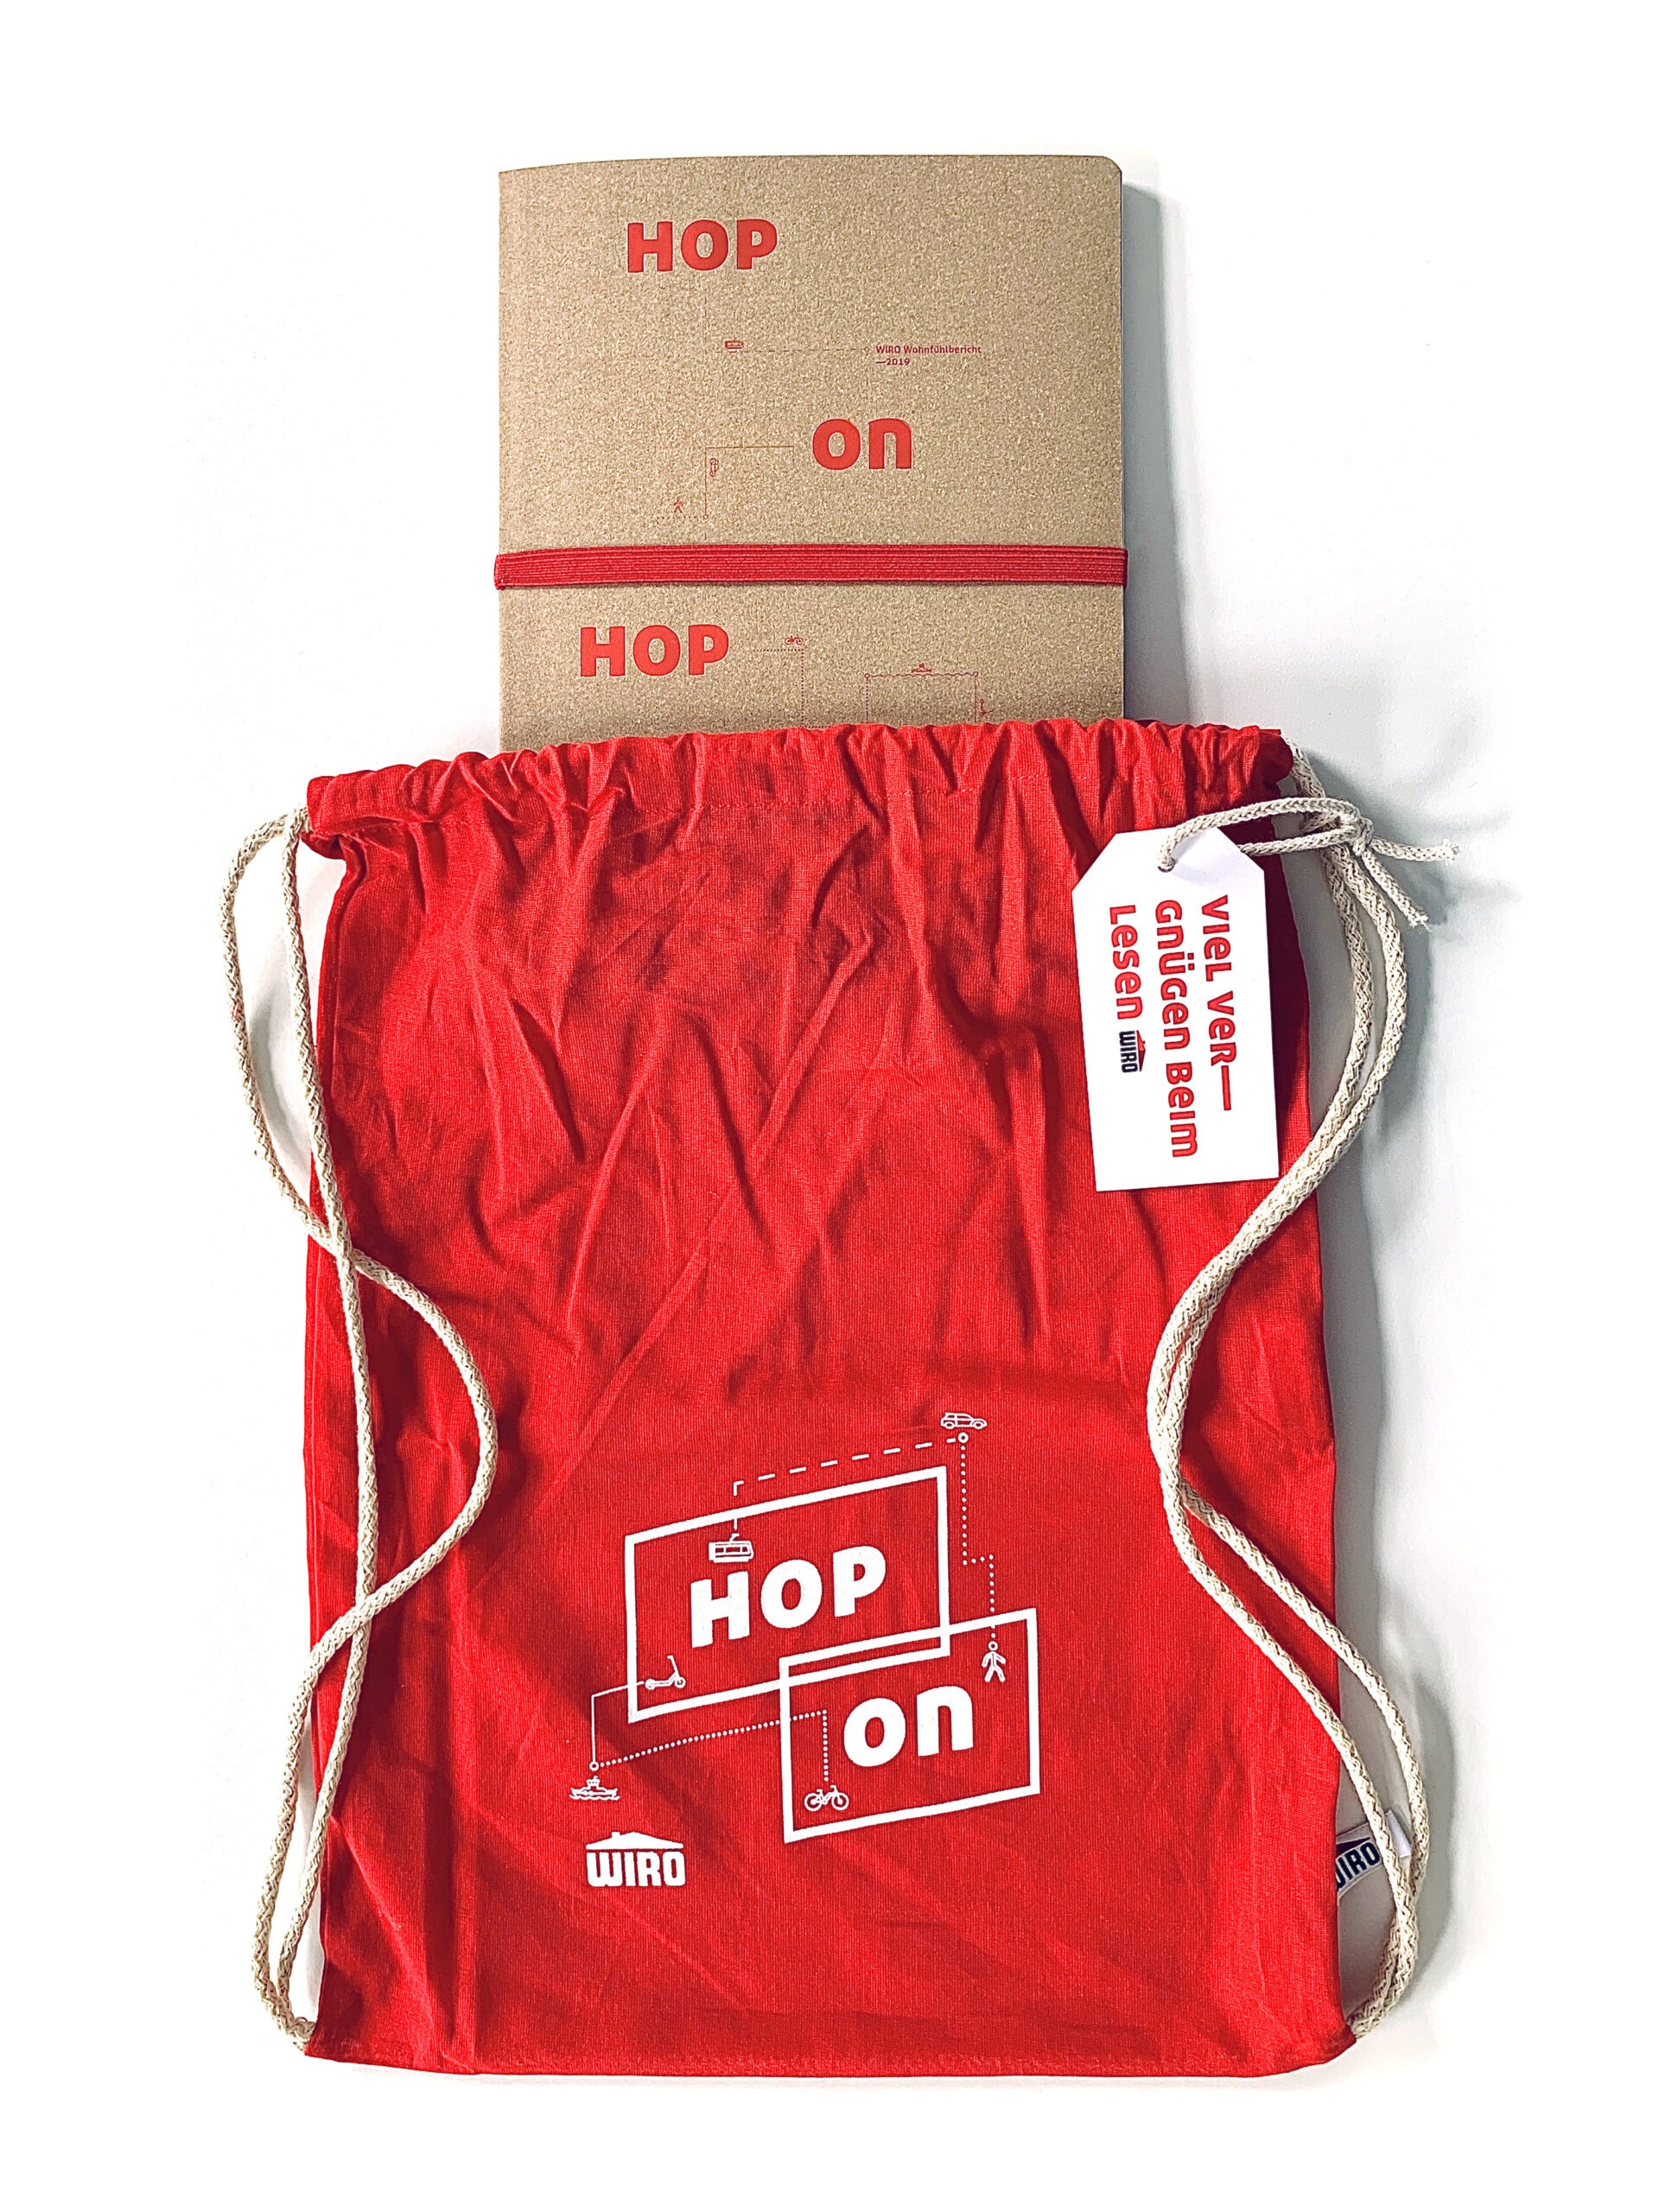 Ein brauner Geschäftsbericht, der in einen roten Turnbeutel mit der Aufschrift "Hop on" gesteckt wird. 